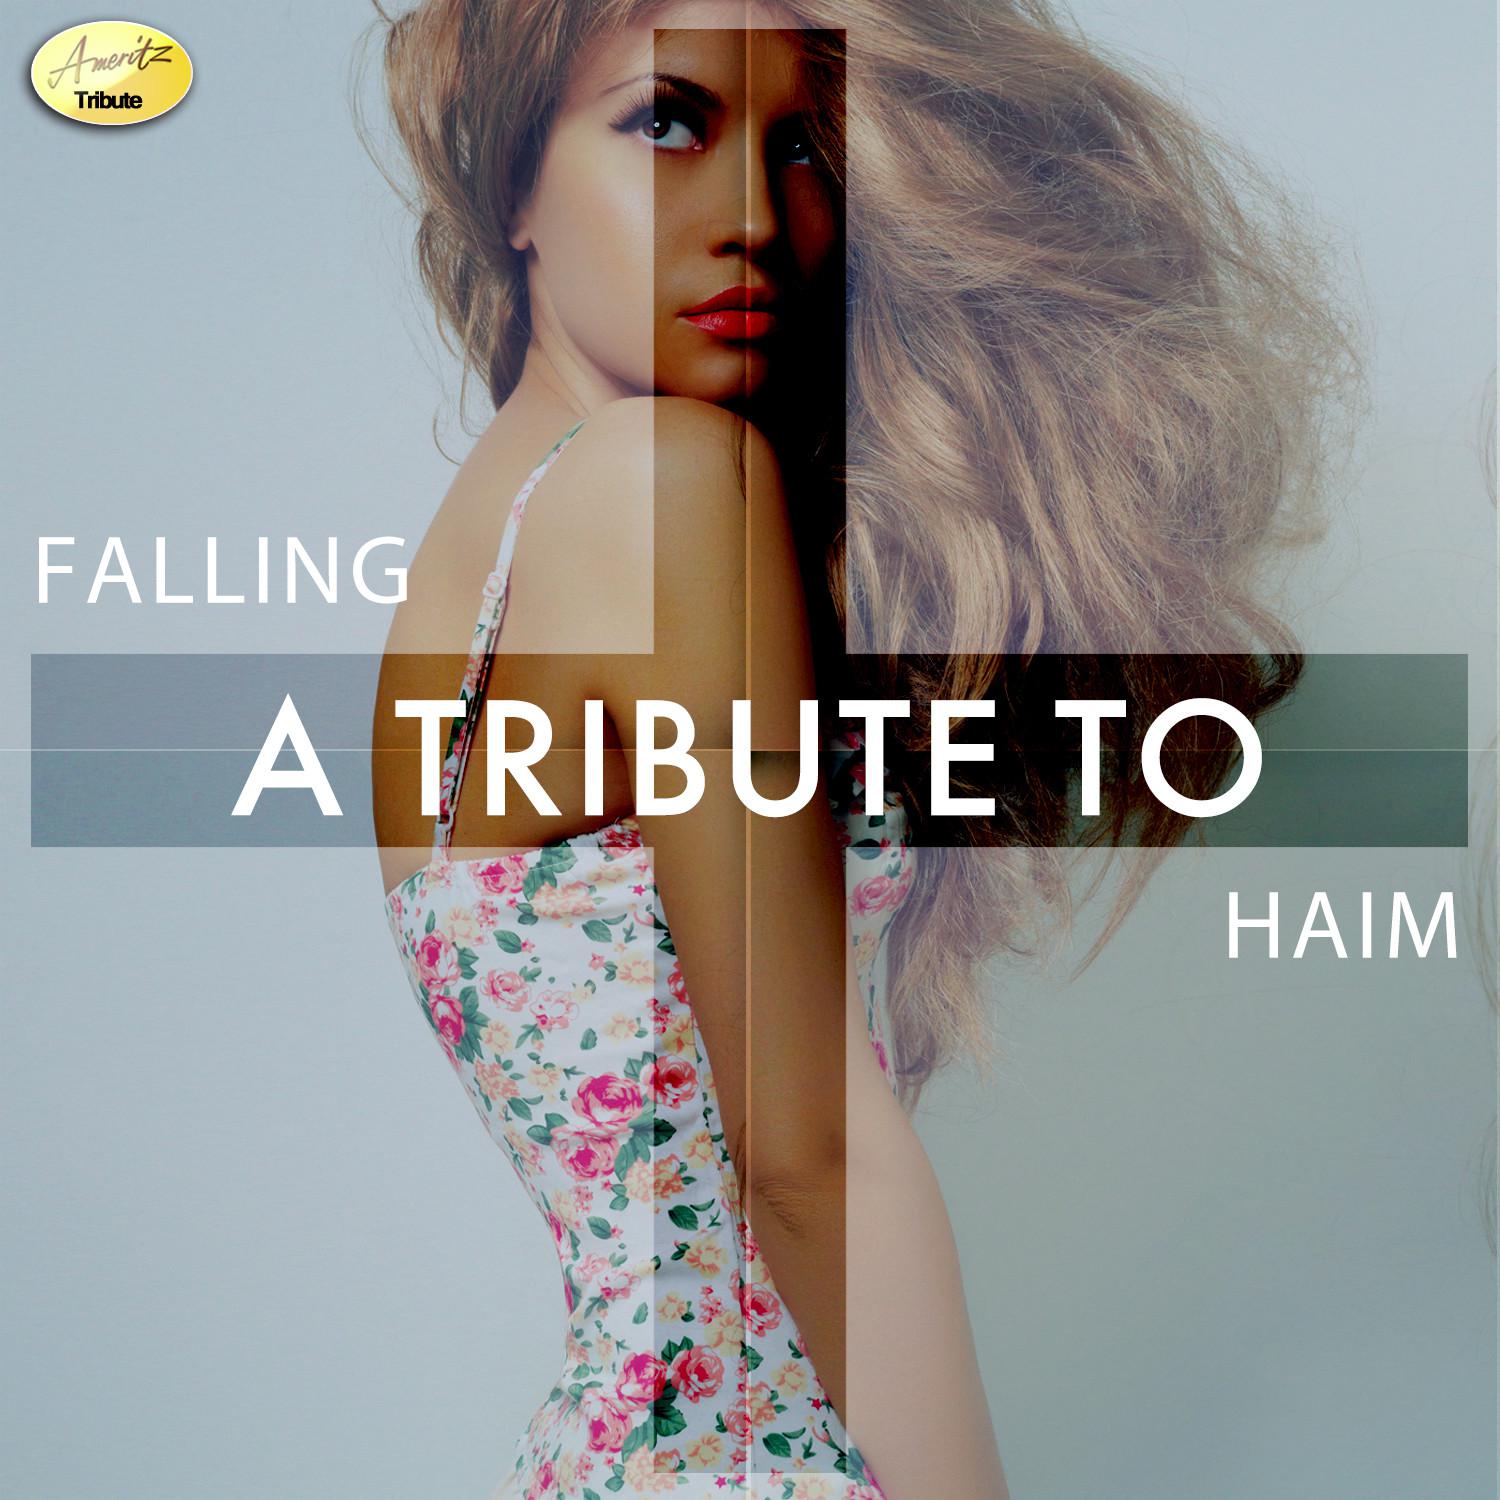 Falling - A Tribute to Haim